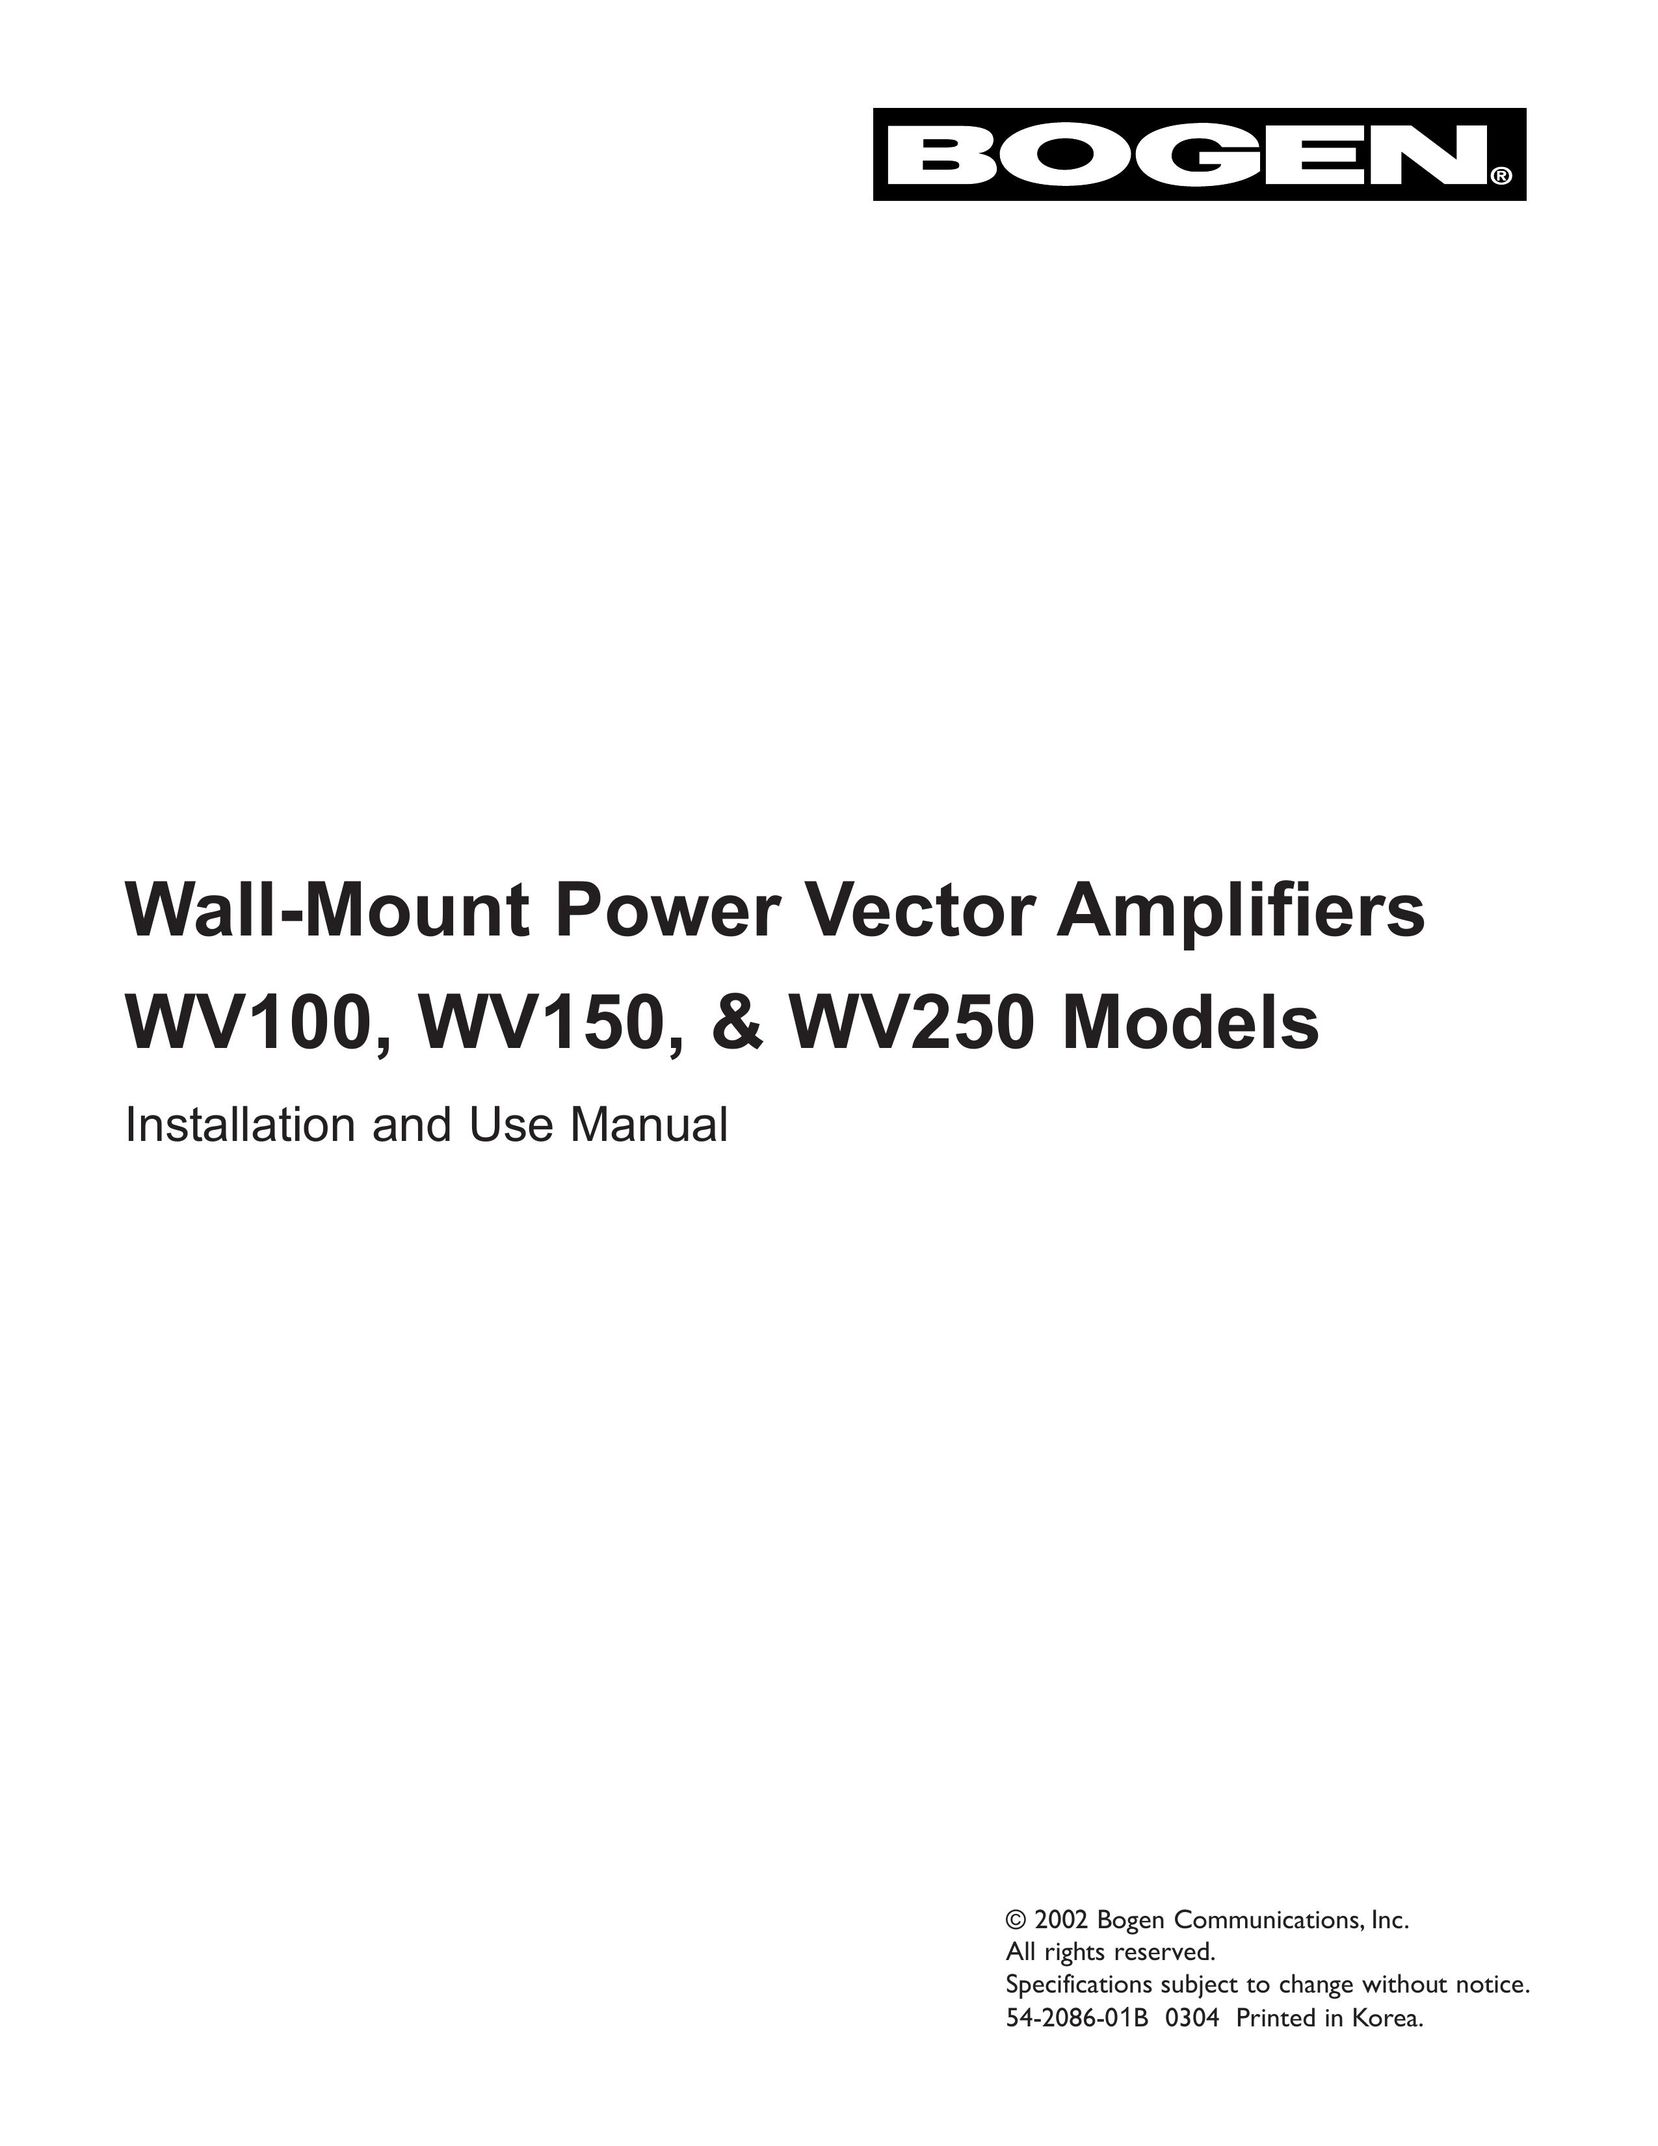 Bogen & WV250 Stereo Amplifier User Manual